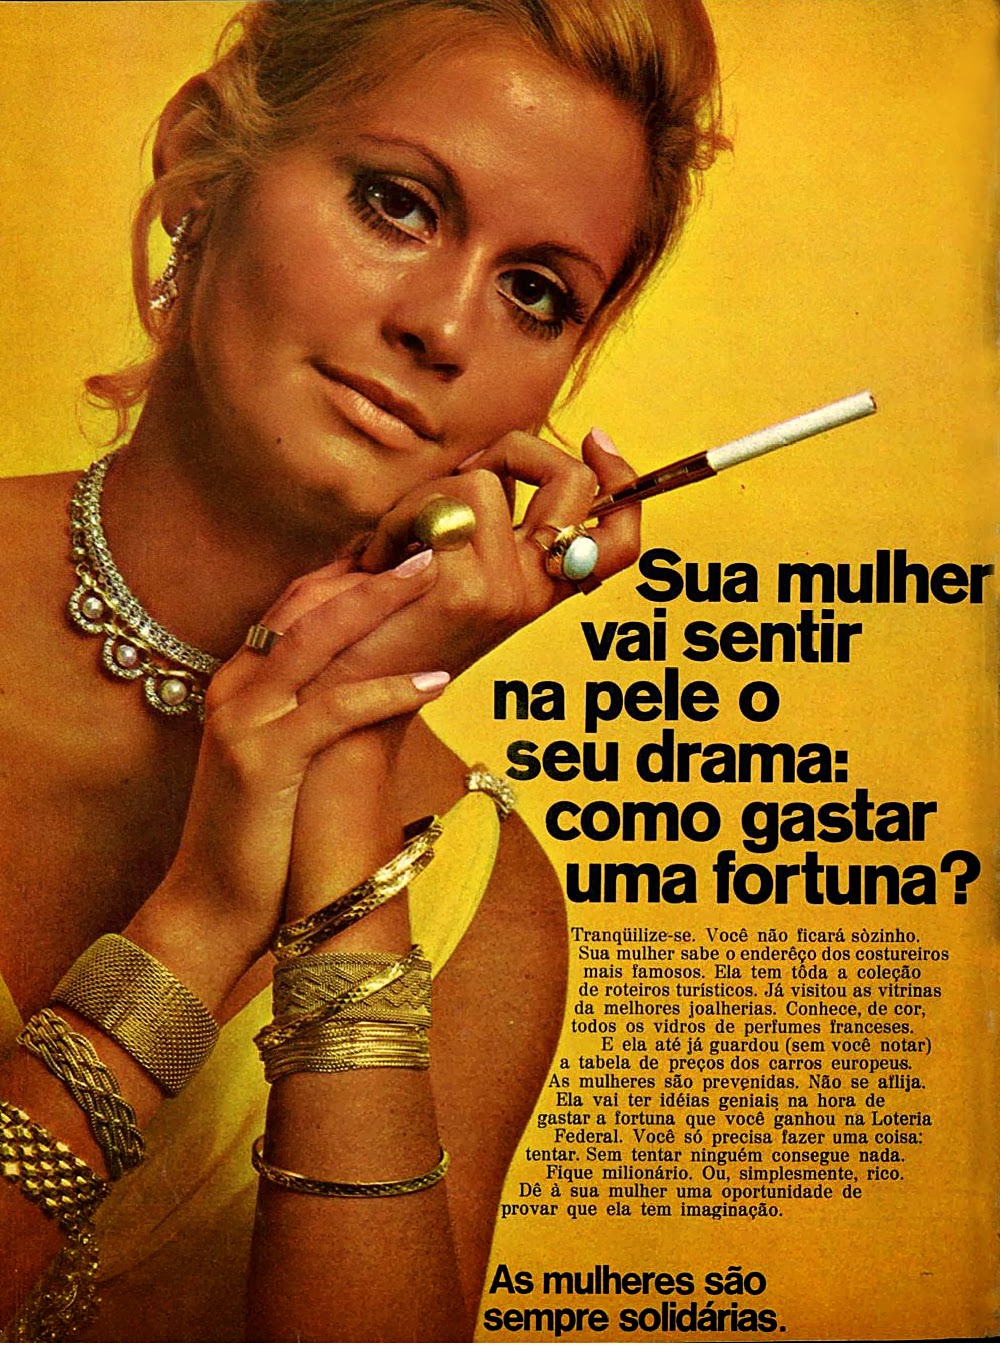 1970. História da década de 70. Propaganda nos anos 70. Brazil in the 70s. Oswaldo Hernandez.